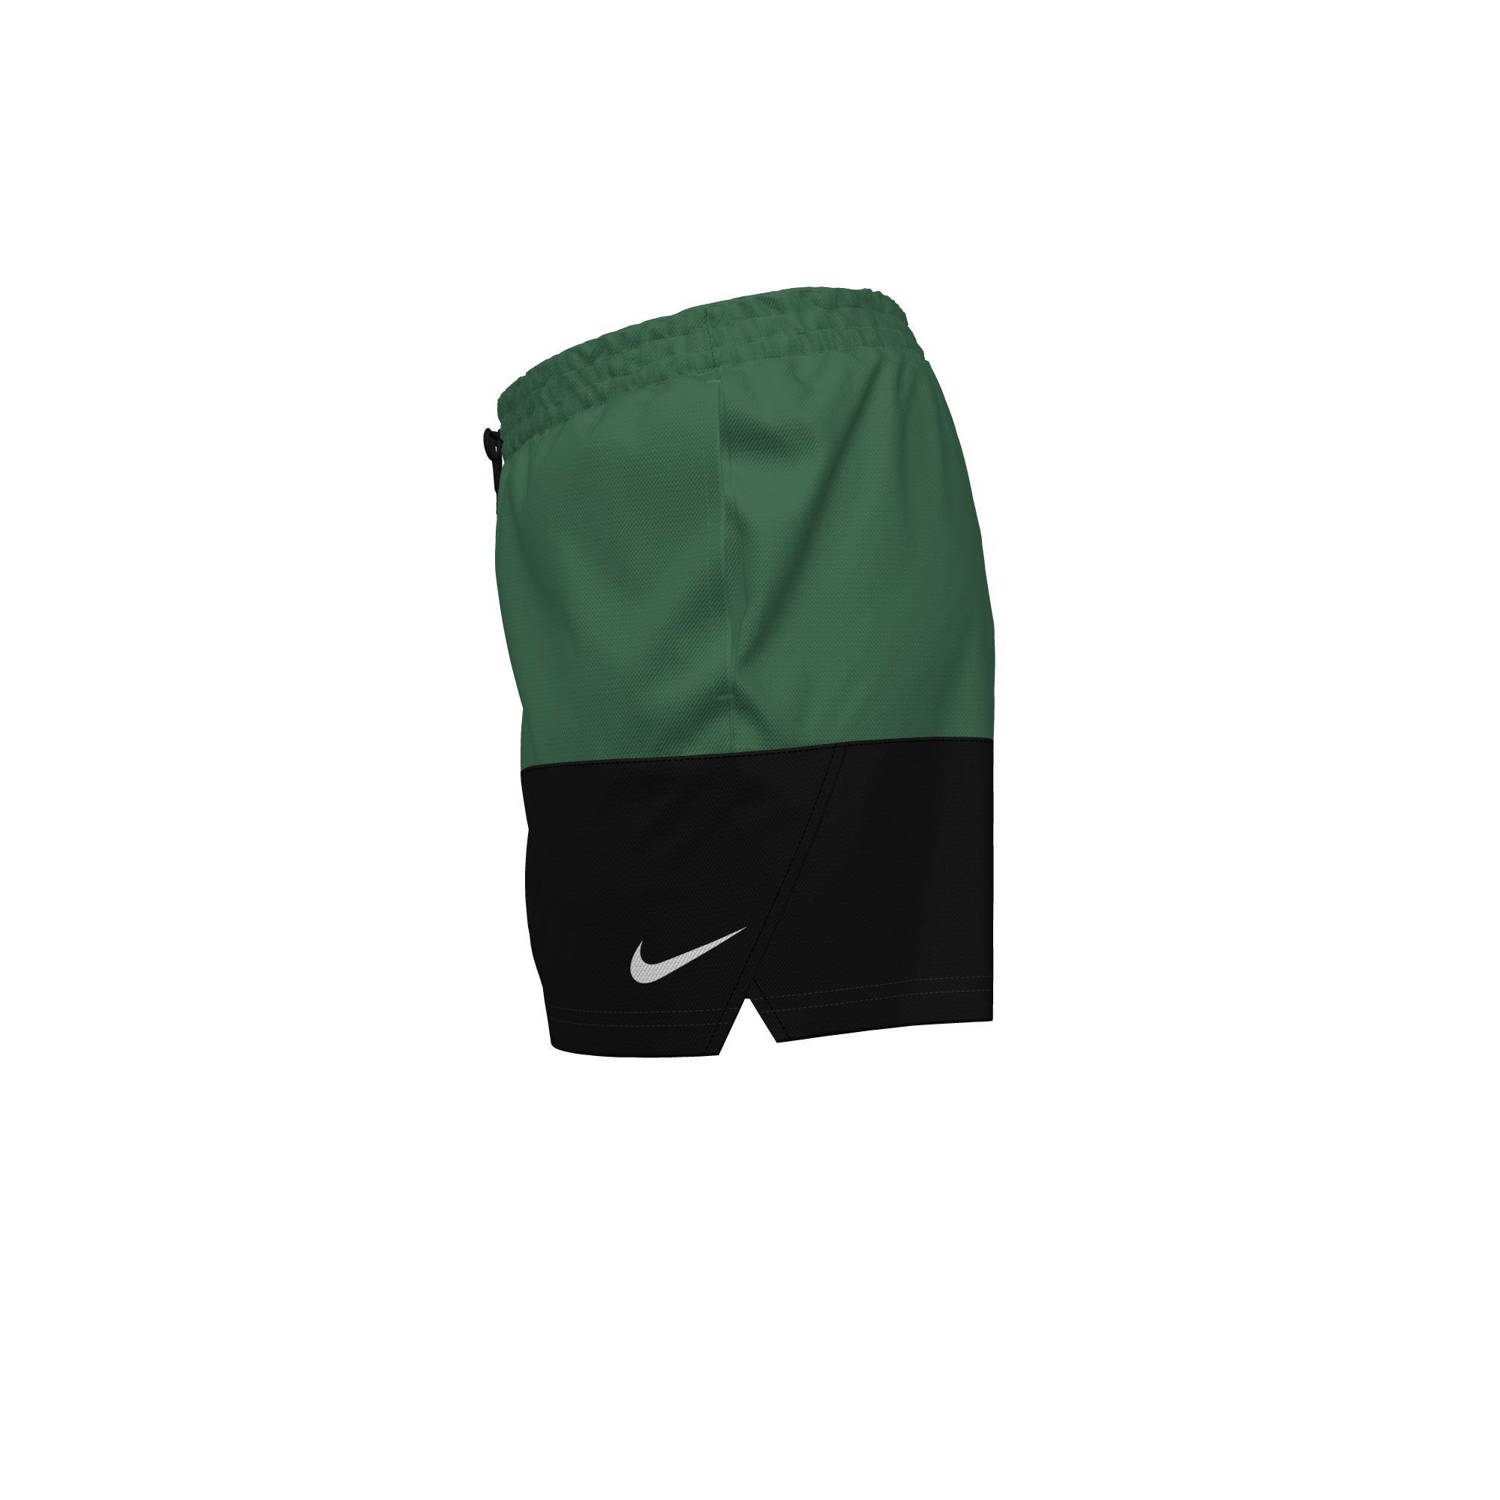 Nike zwemshort Split groen zwart